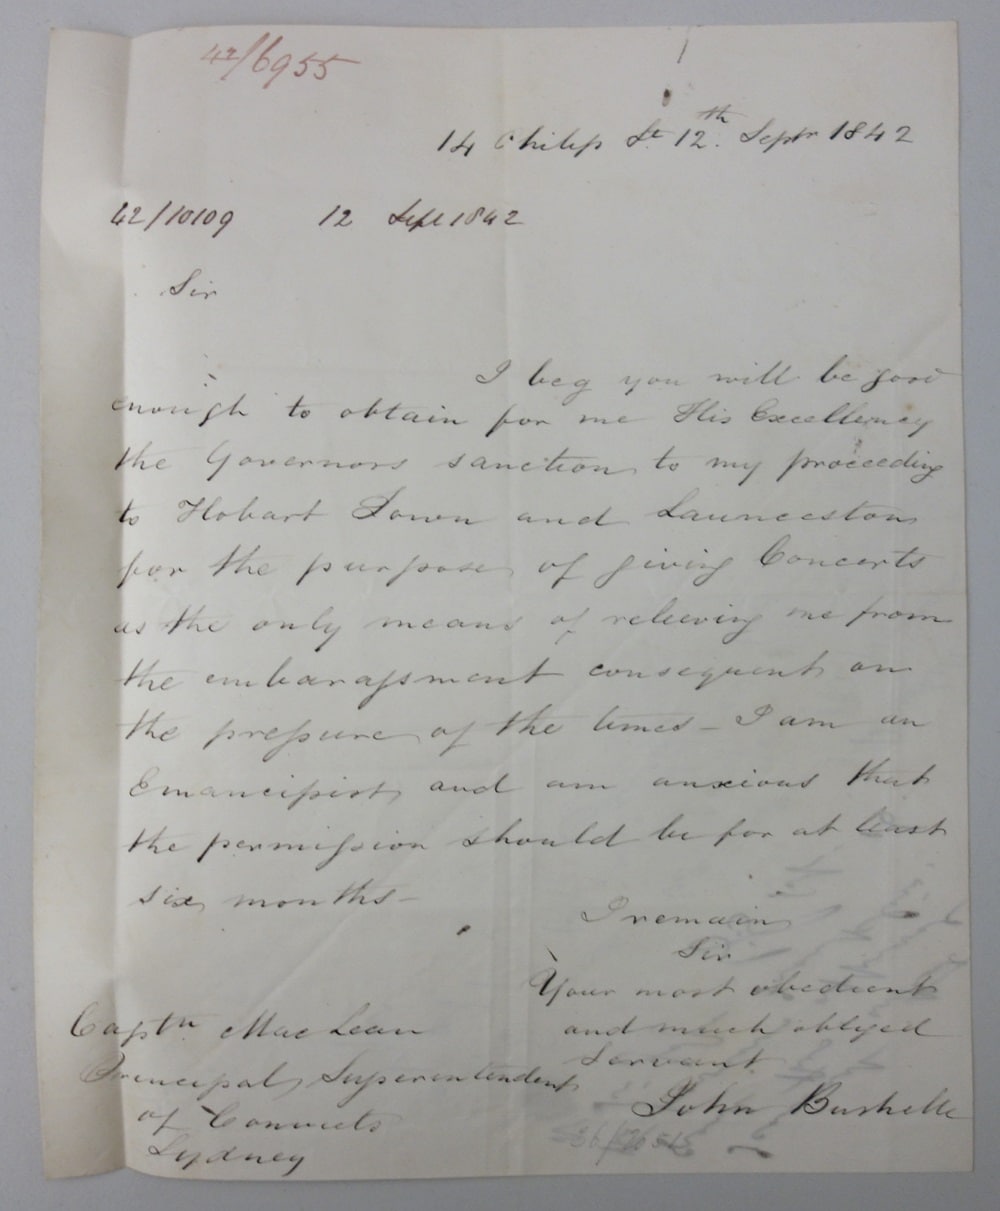 Letter, from John Bushelle, Sydney, 12 September 1842